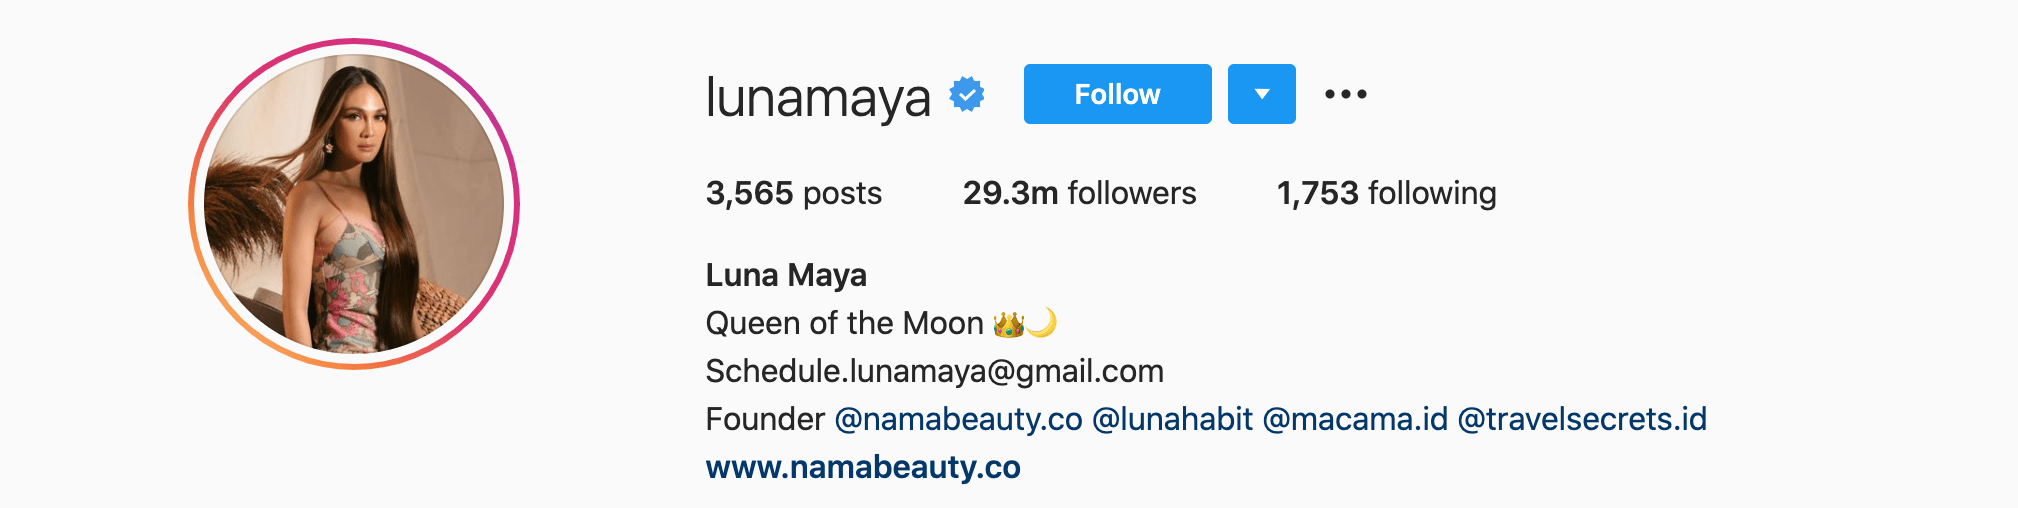 Top Instagram Influencers - LUNA MAYA